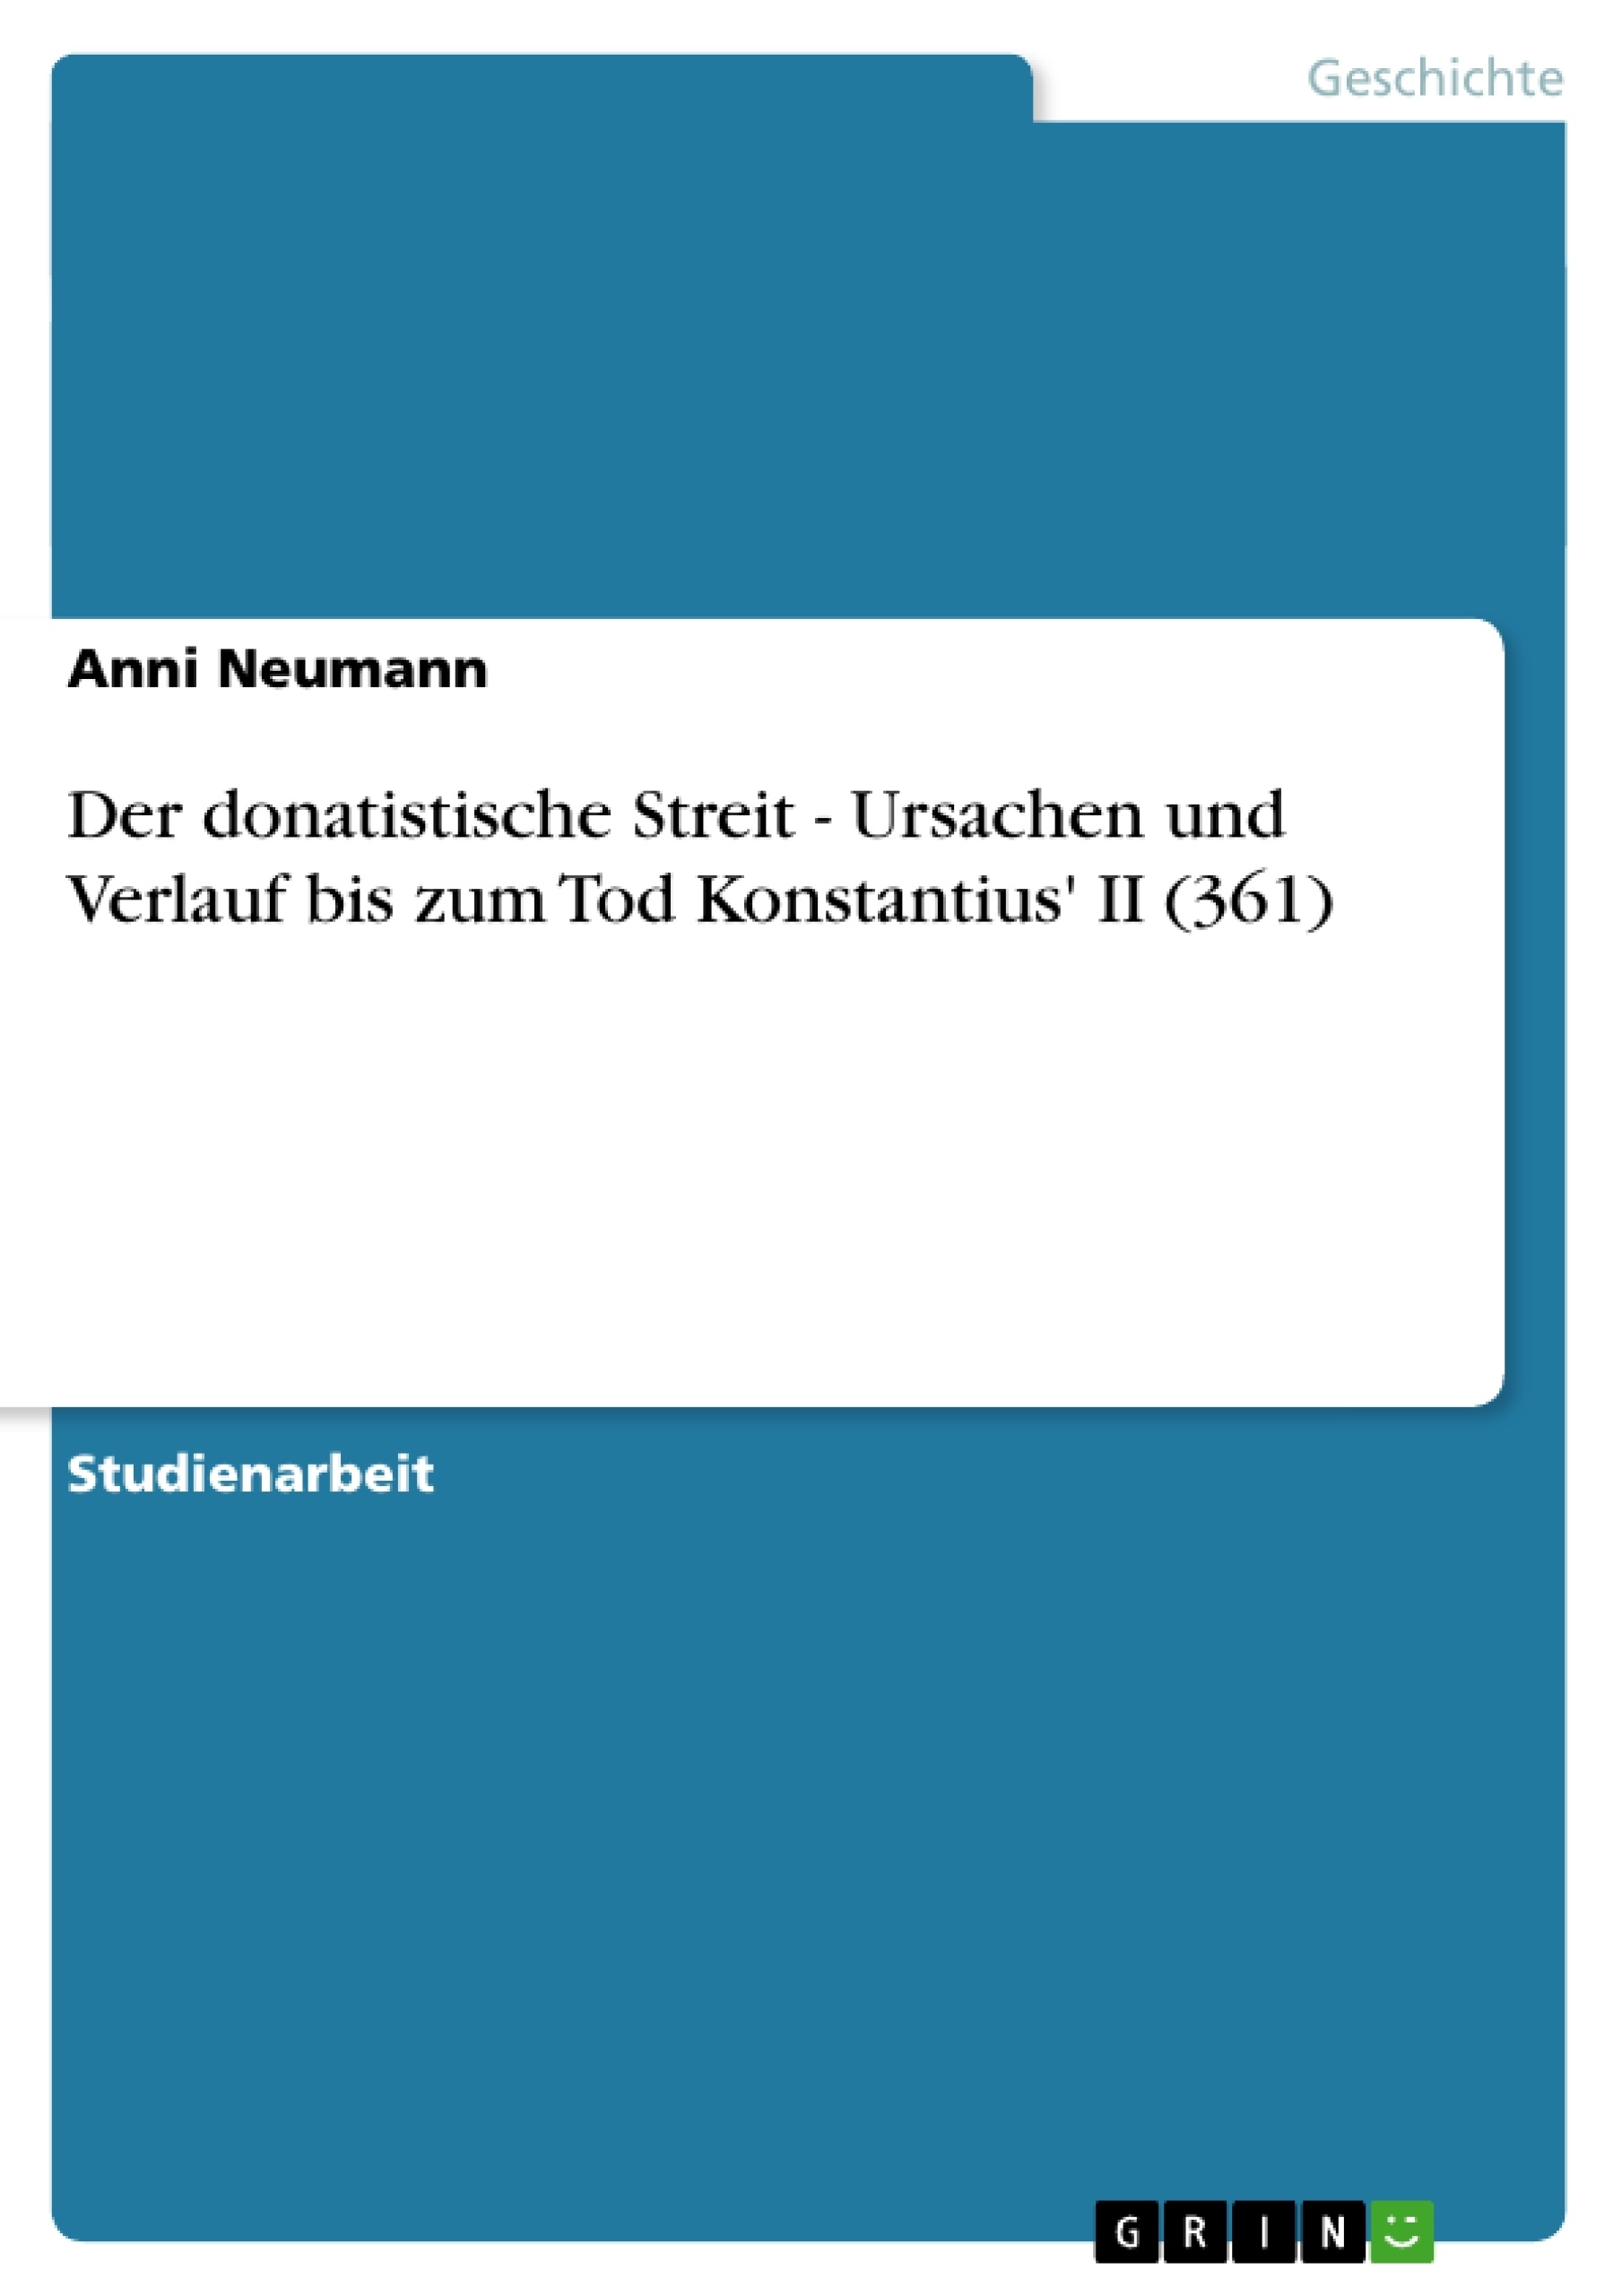 Title: Der donatistische Streit - Ursachen und Verlauf bis zum Tod Konstantius' II (361)